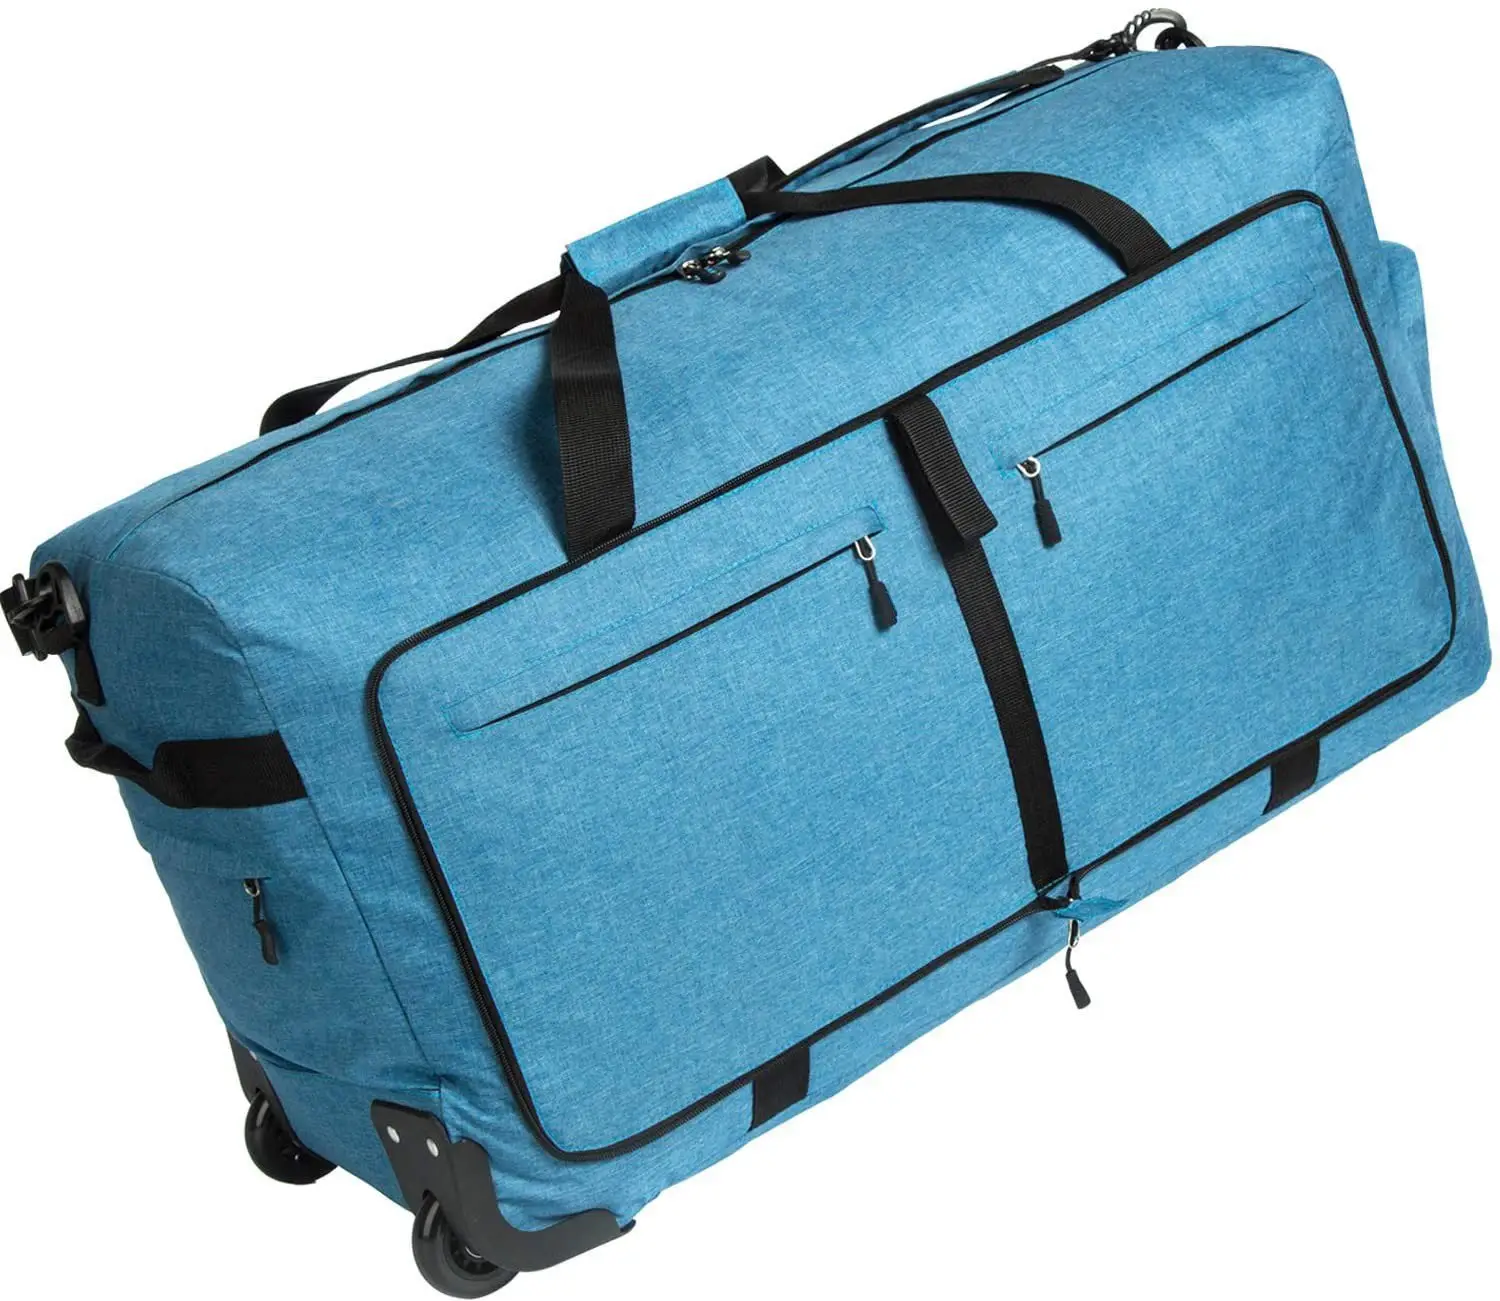 Бесплатный образец, спортивная сумка на колесиках для багажа, большая спортивная сумка на колесиках 100 л, Складная спортивная сумка 30 дюймов для путешествий, Упаковочная спортивная сумка